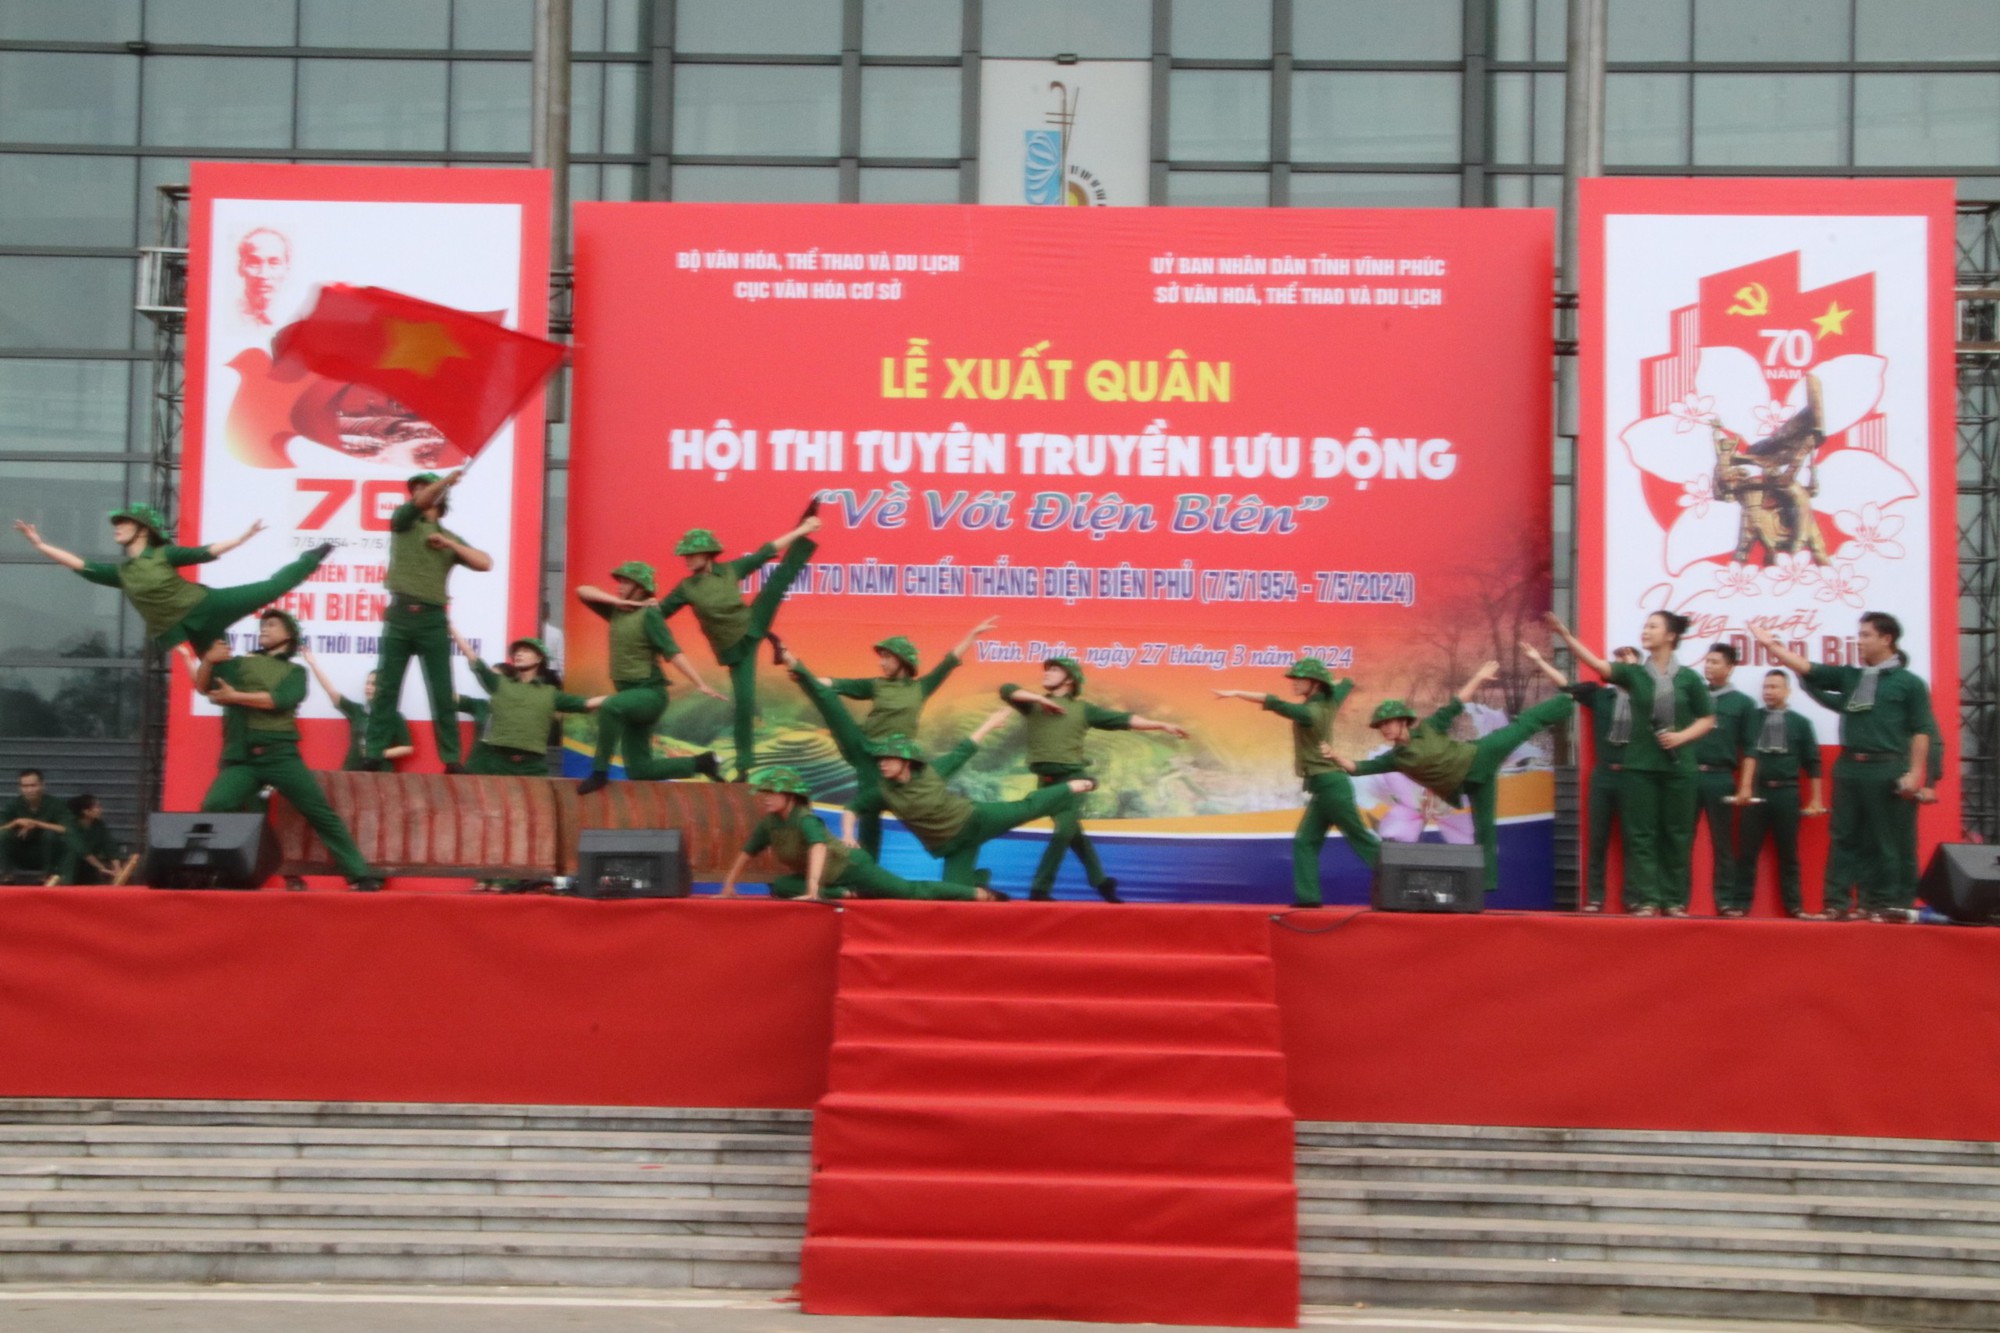 Mobiler Propagandawettbewerb zum 70. Jahrestag des Sieges von Dien Bien Phu (7. Mai 5 – 1954. Mai 7) – Foto 5.